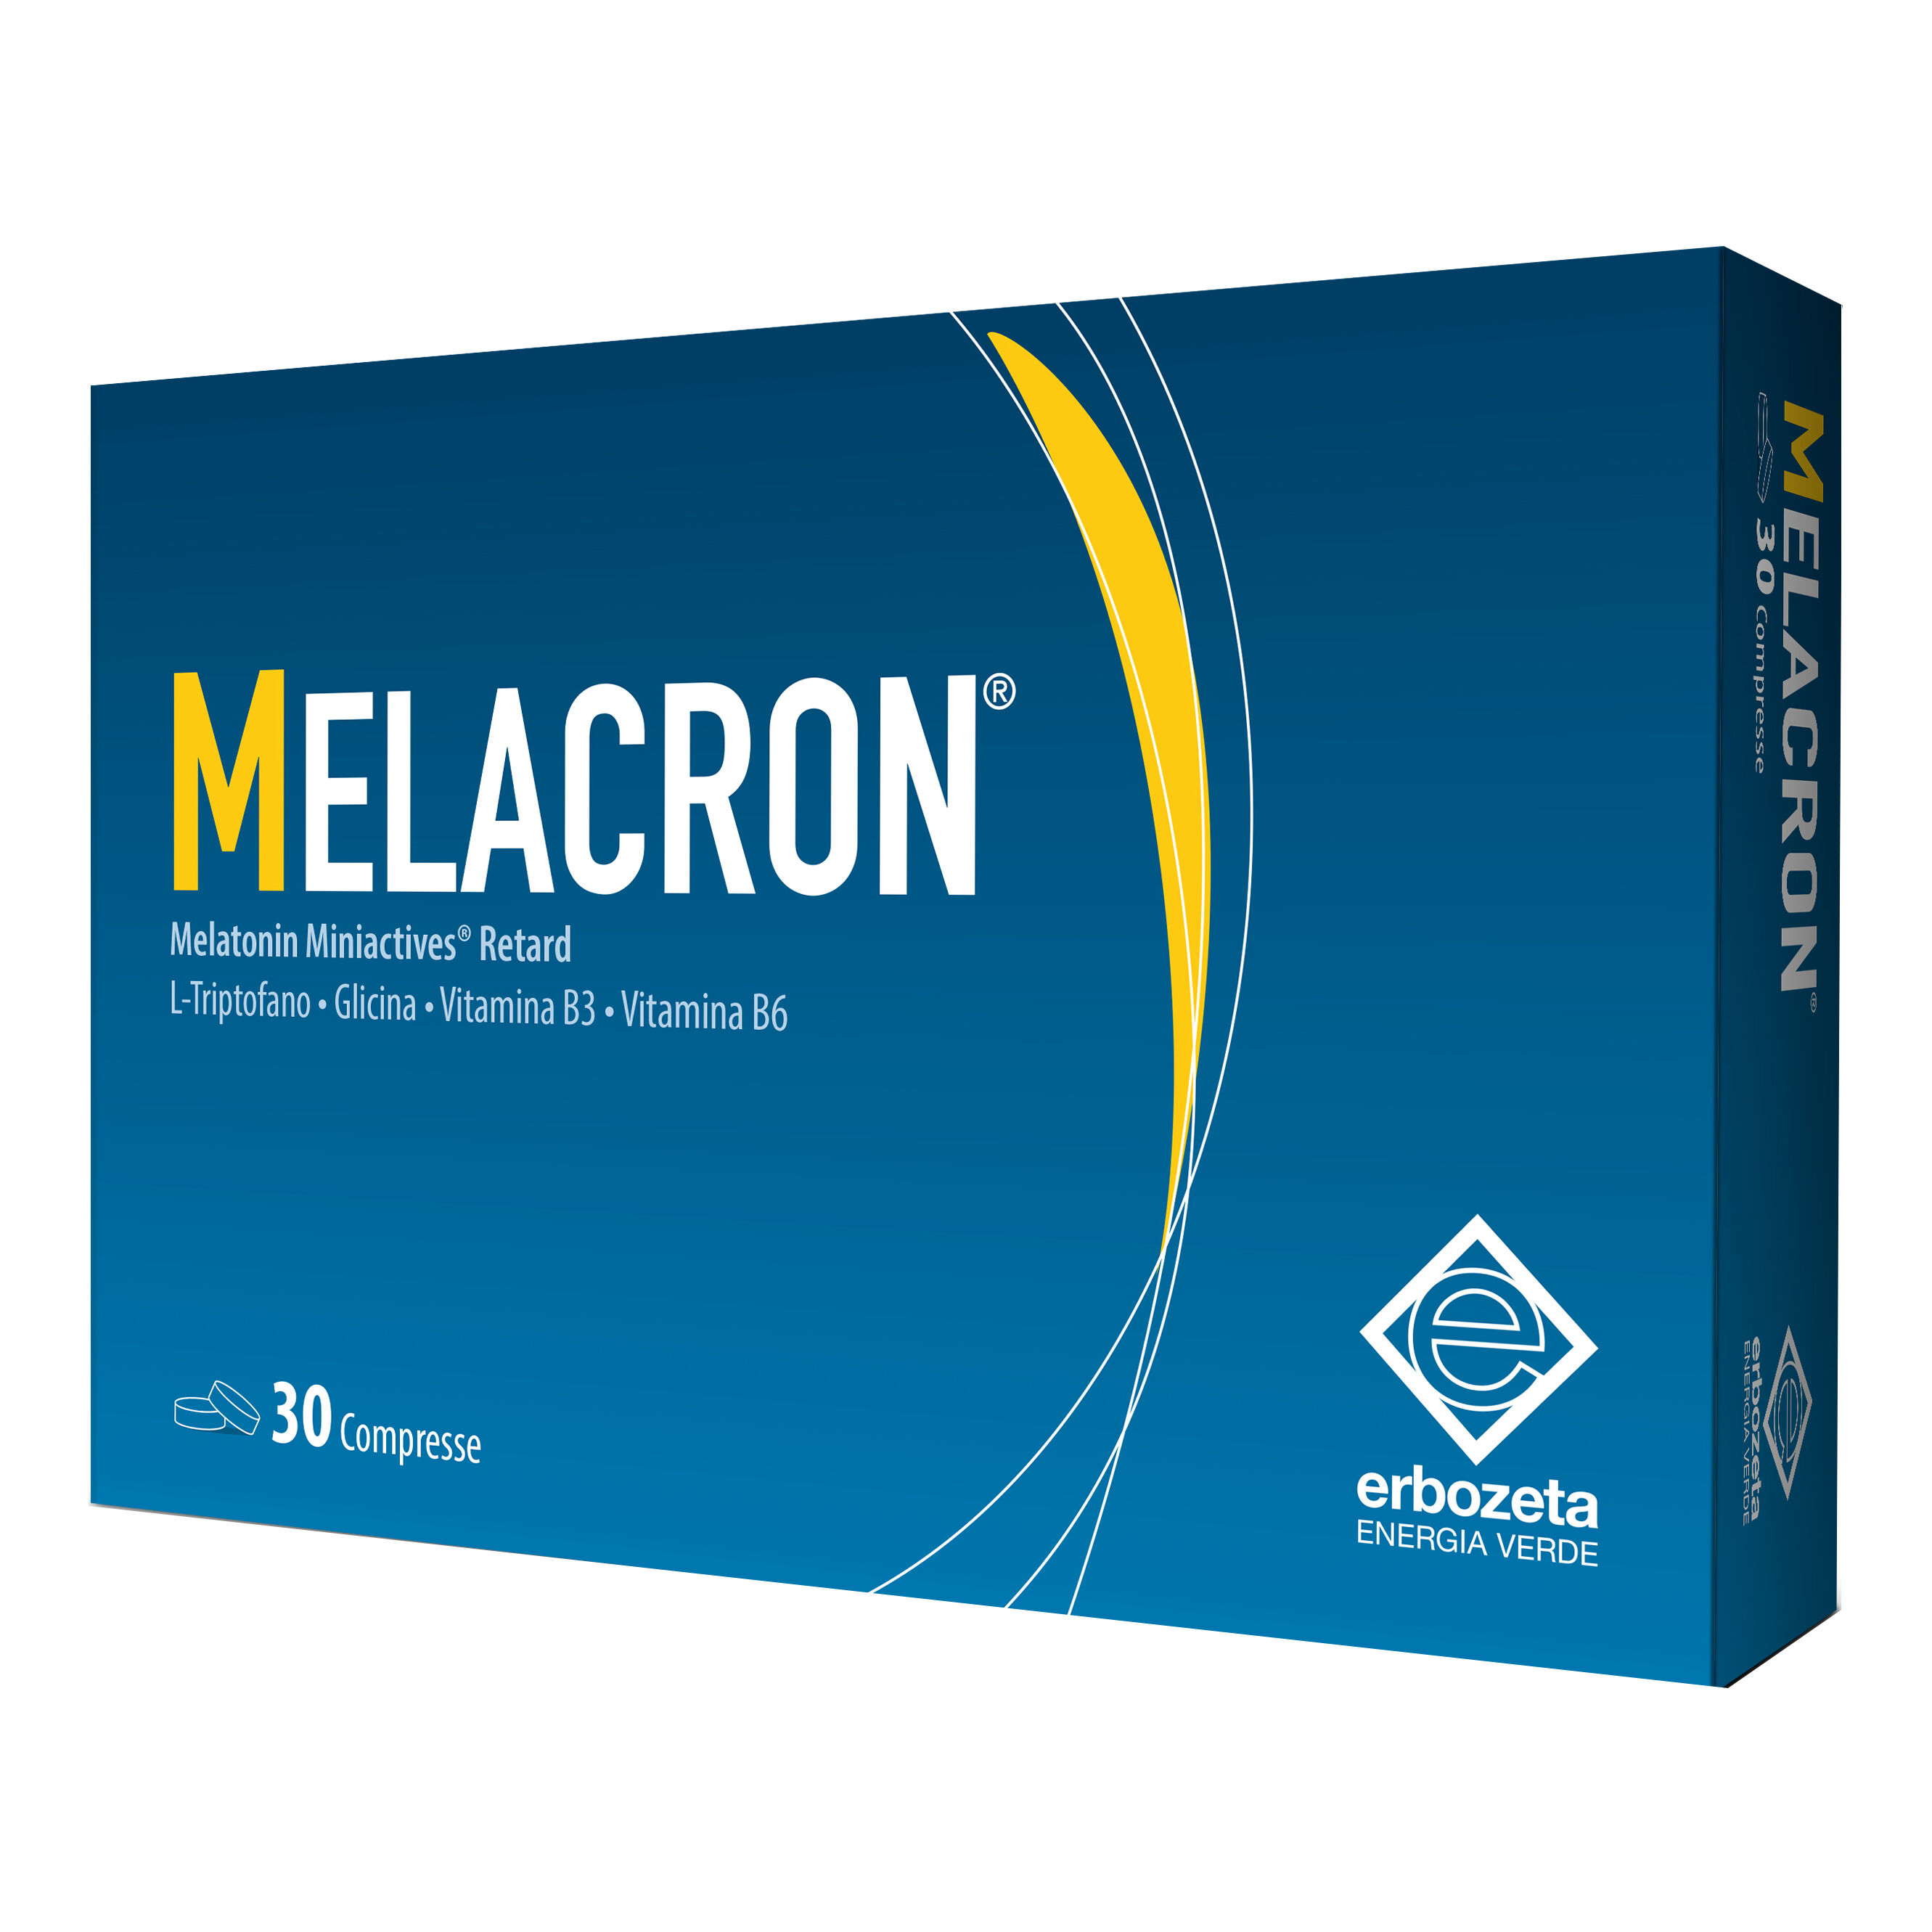 Erbozeta Spa Melacron*30 Cpr